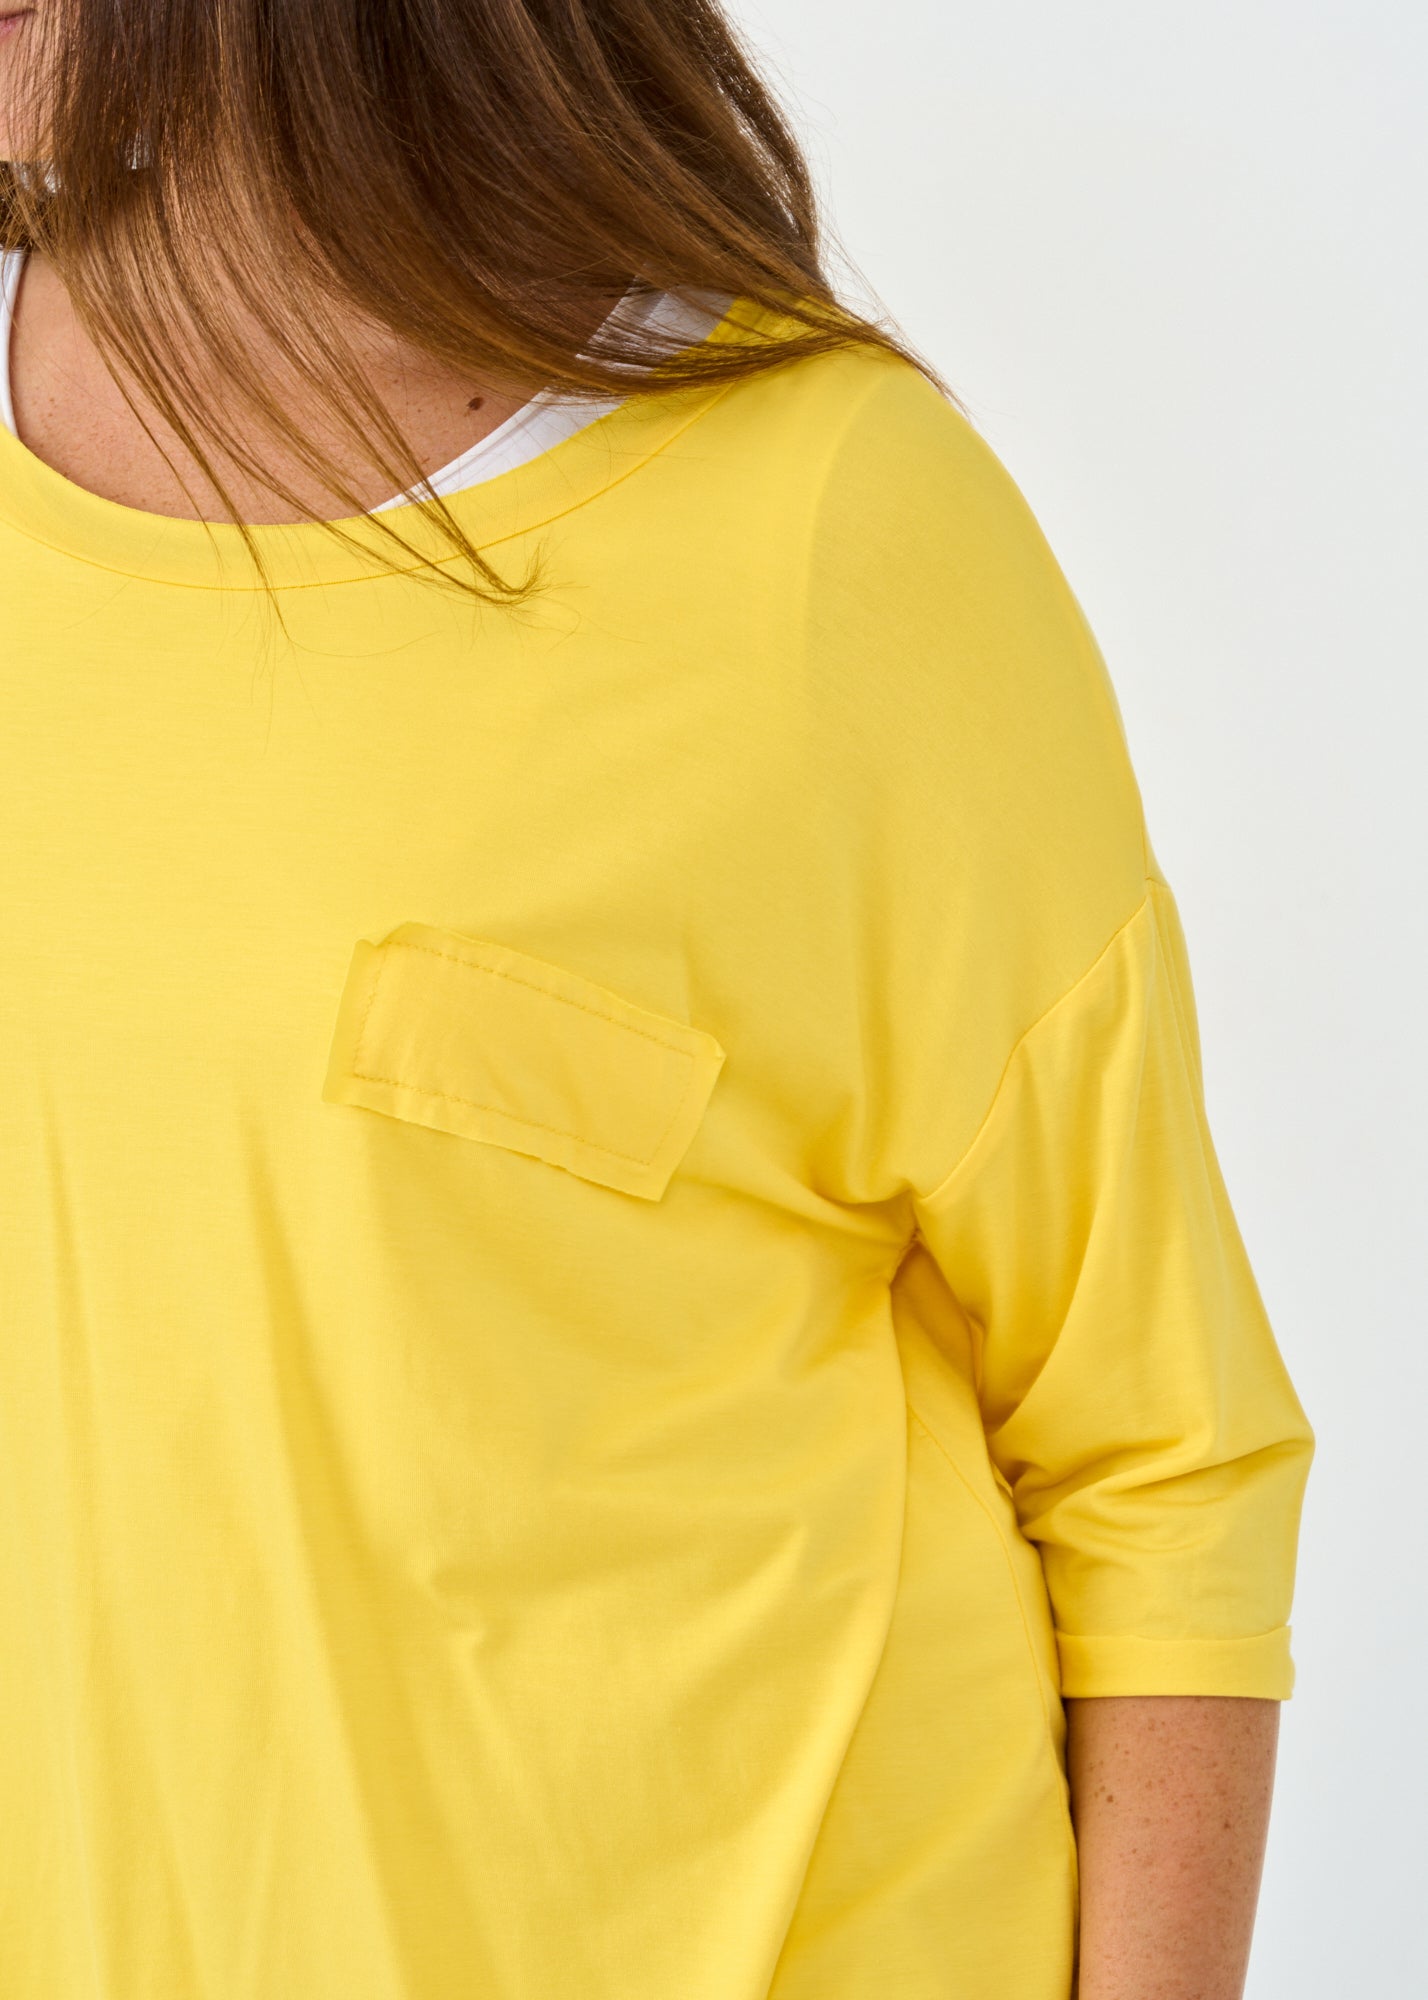 חולצת בסיס 3 4 עם דמוי כיס צהוב